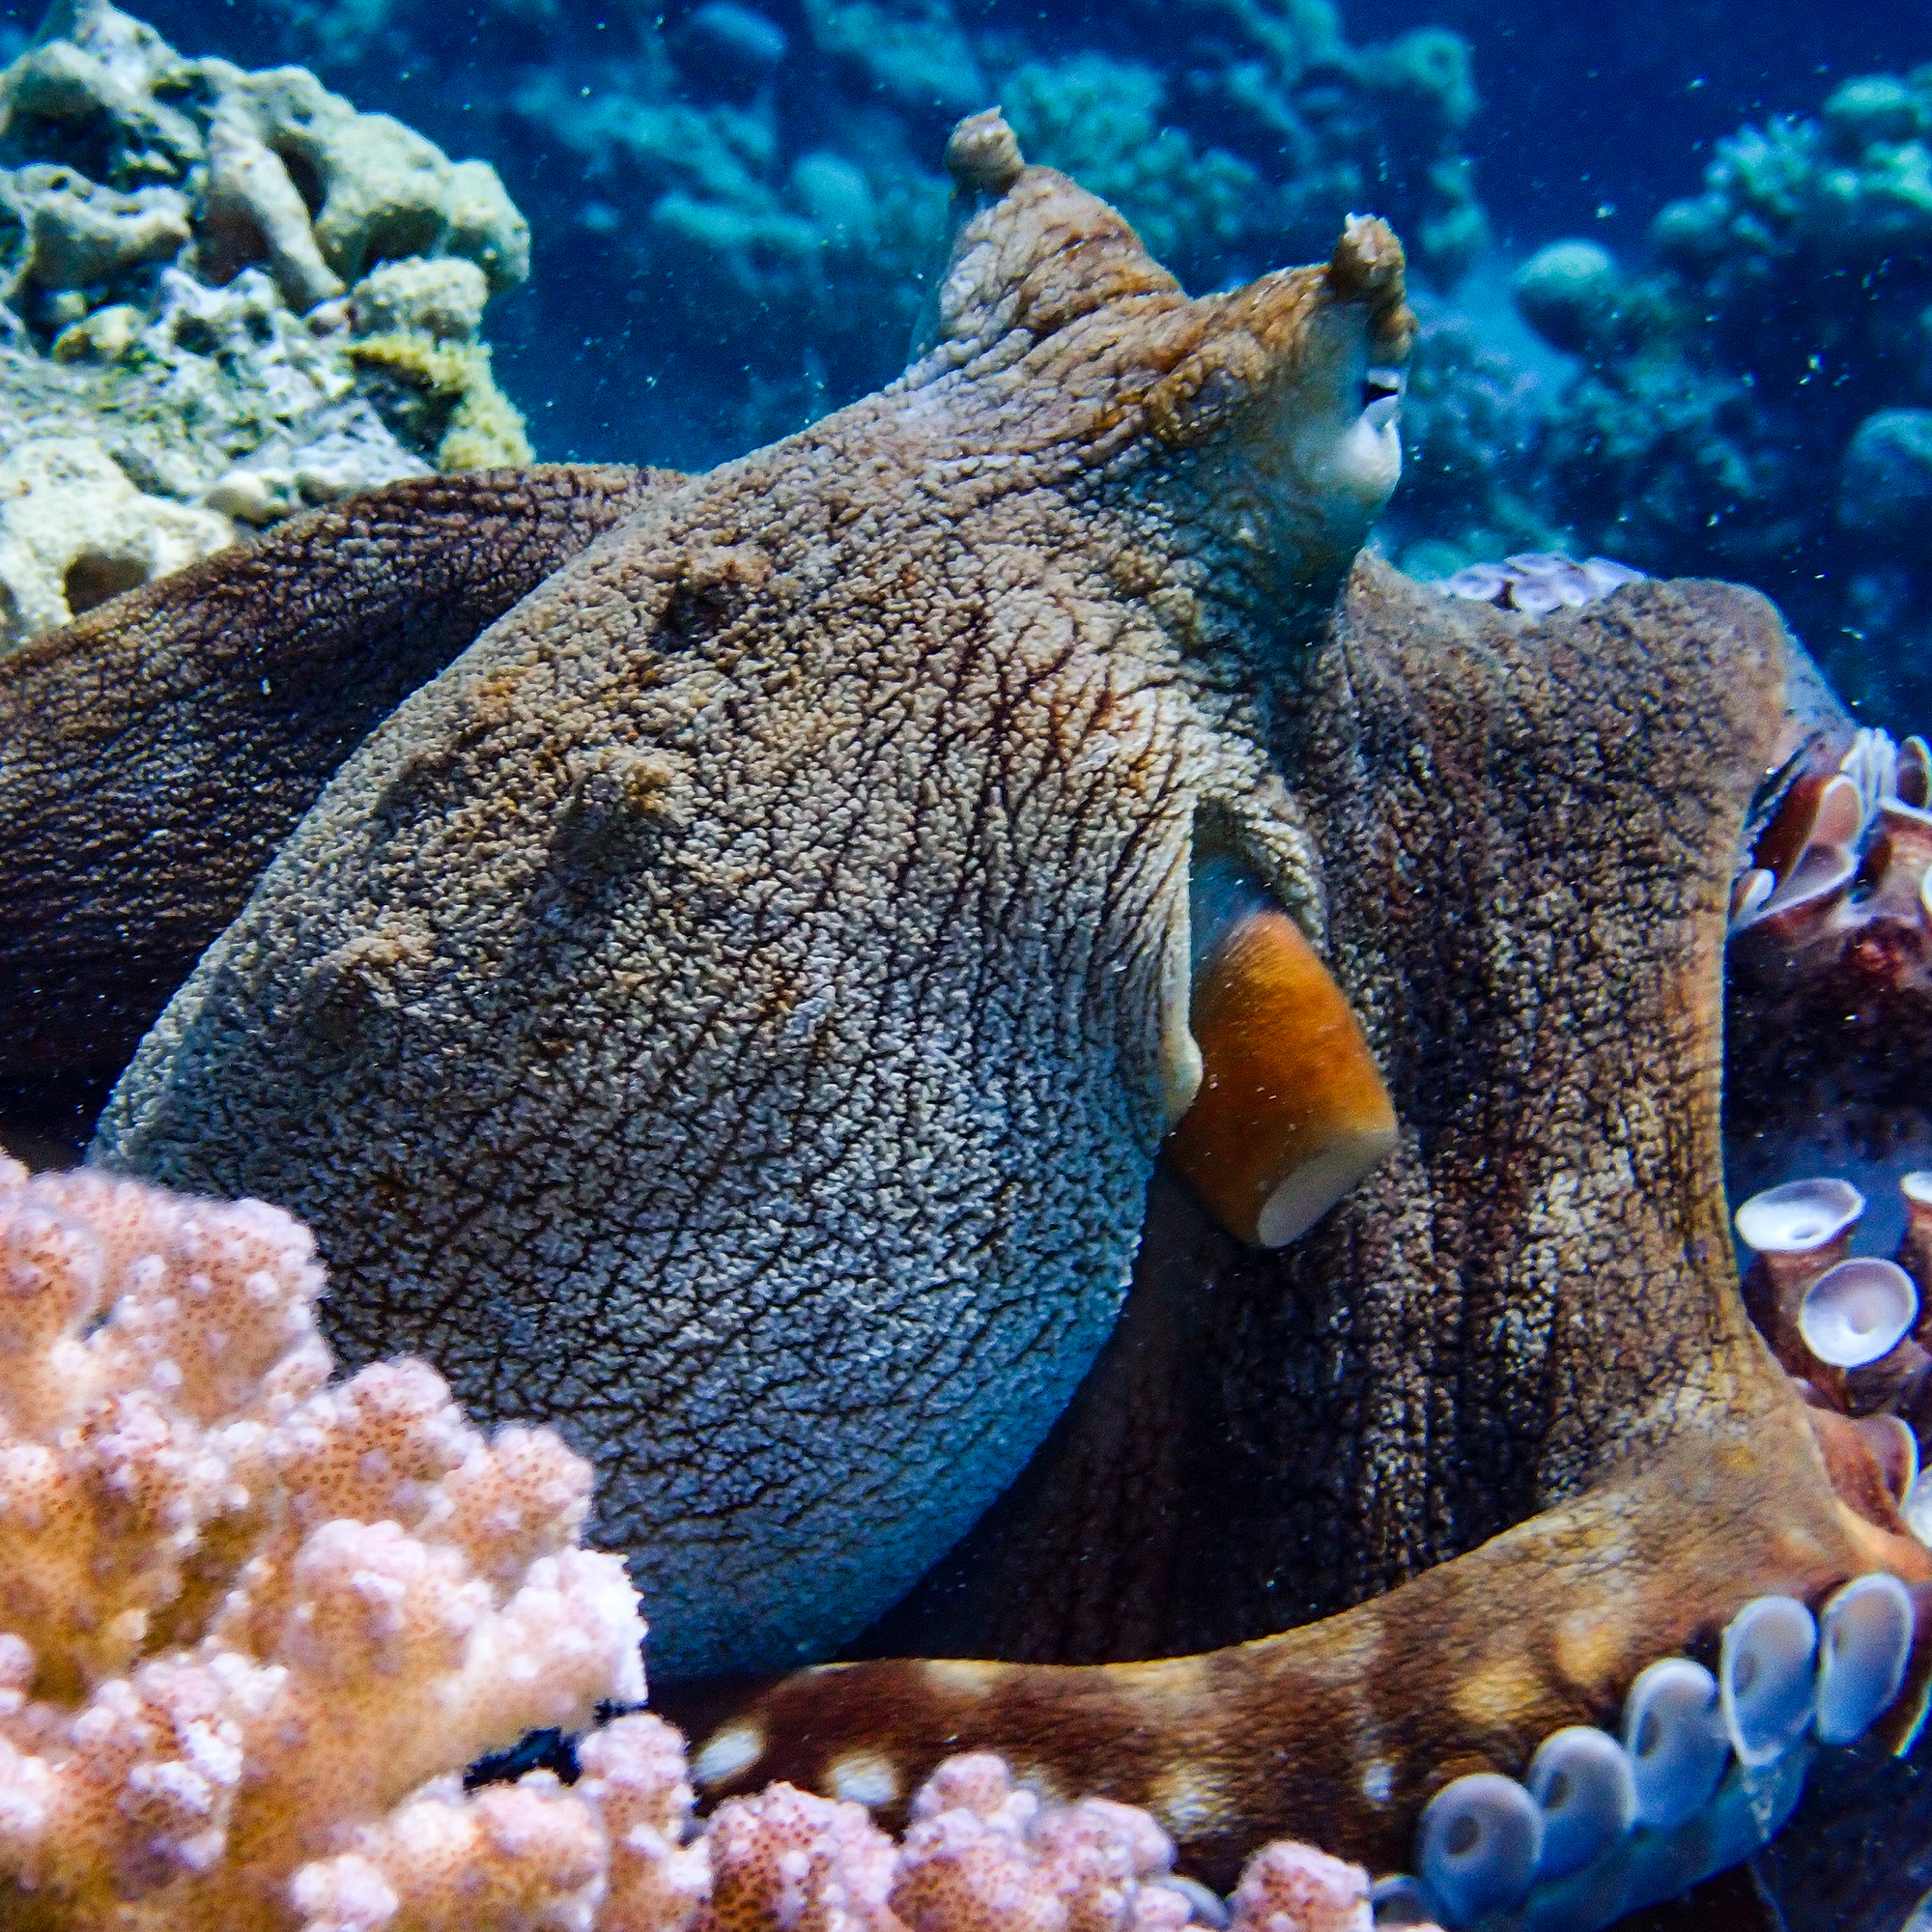 Octopus at Makadi Bay House Reef